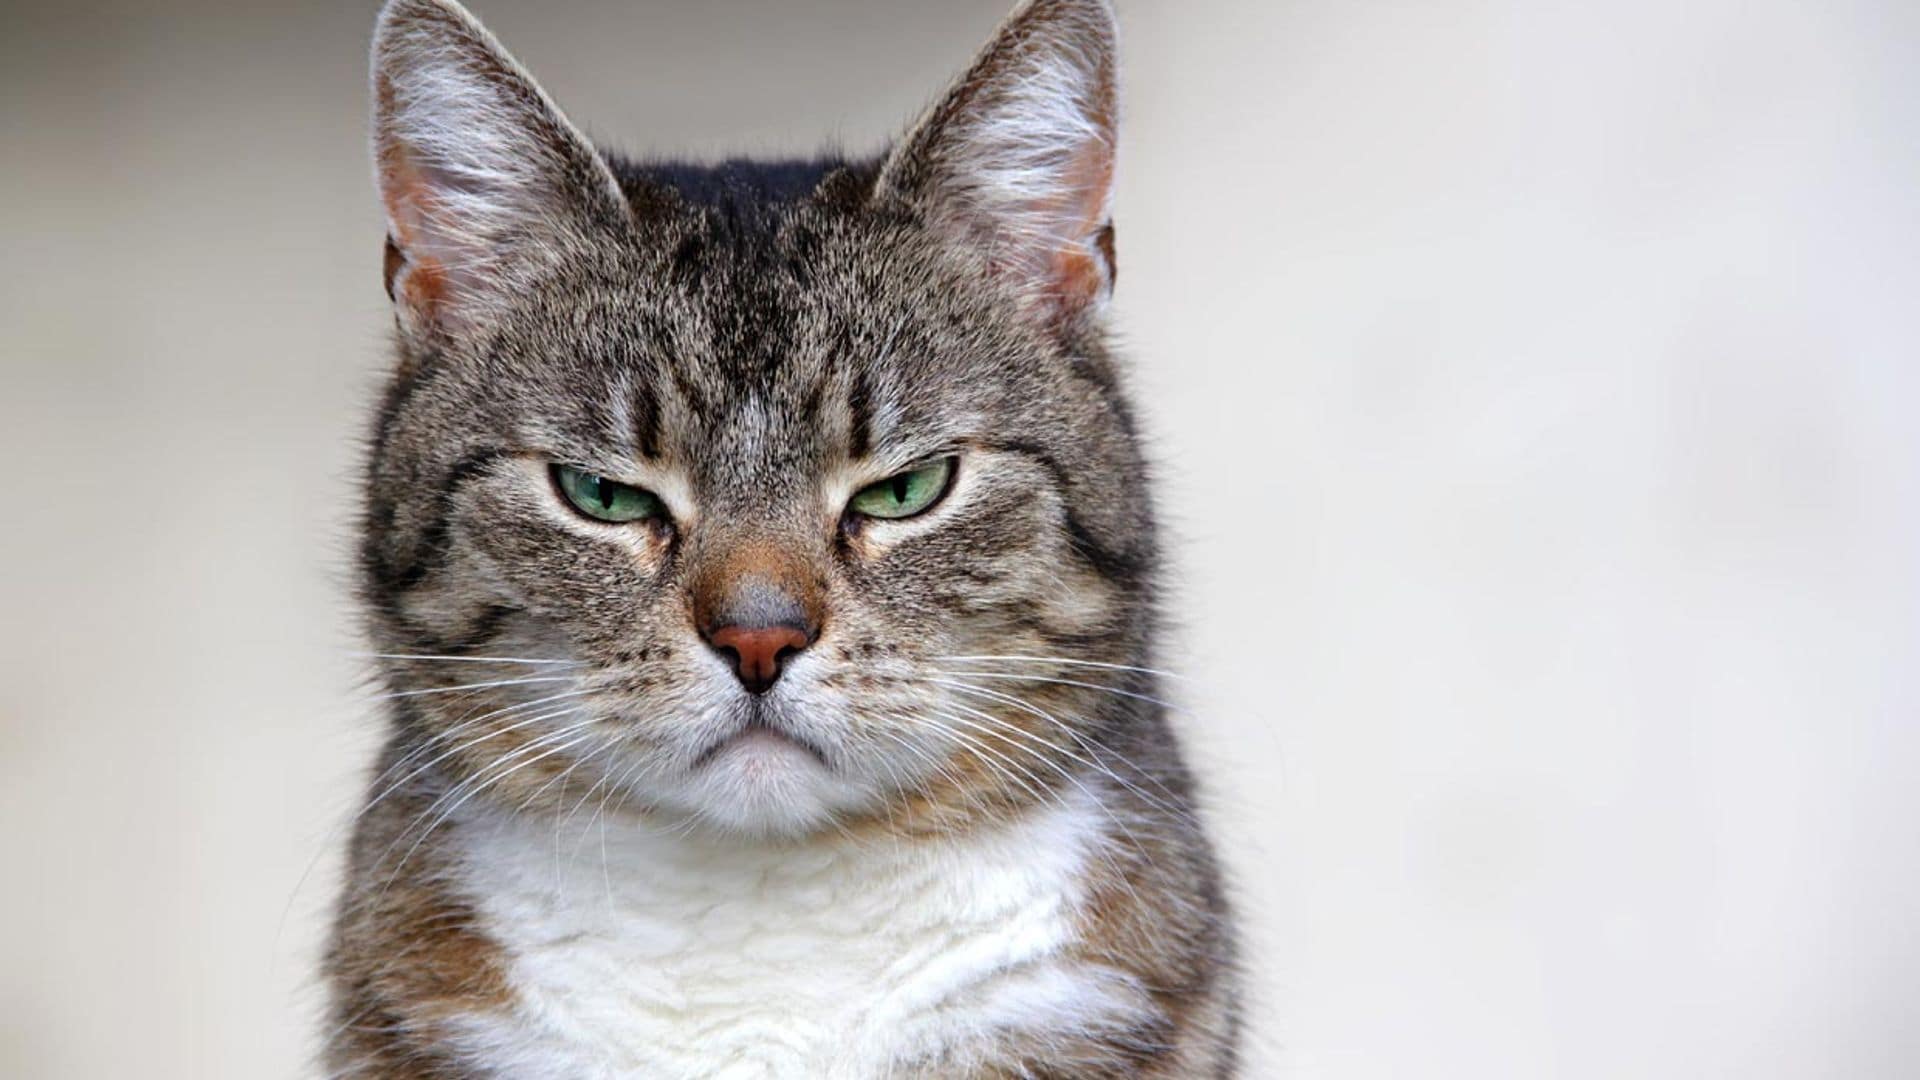 Descubre si tu gato siente dolor observando sus bigotes, la mirada y otras expresiones faciales